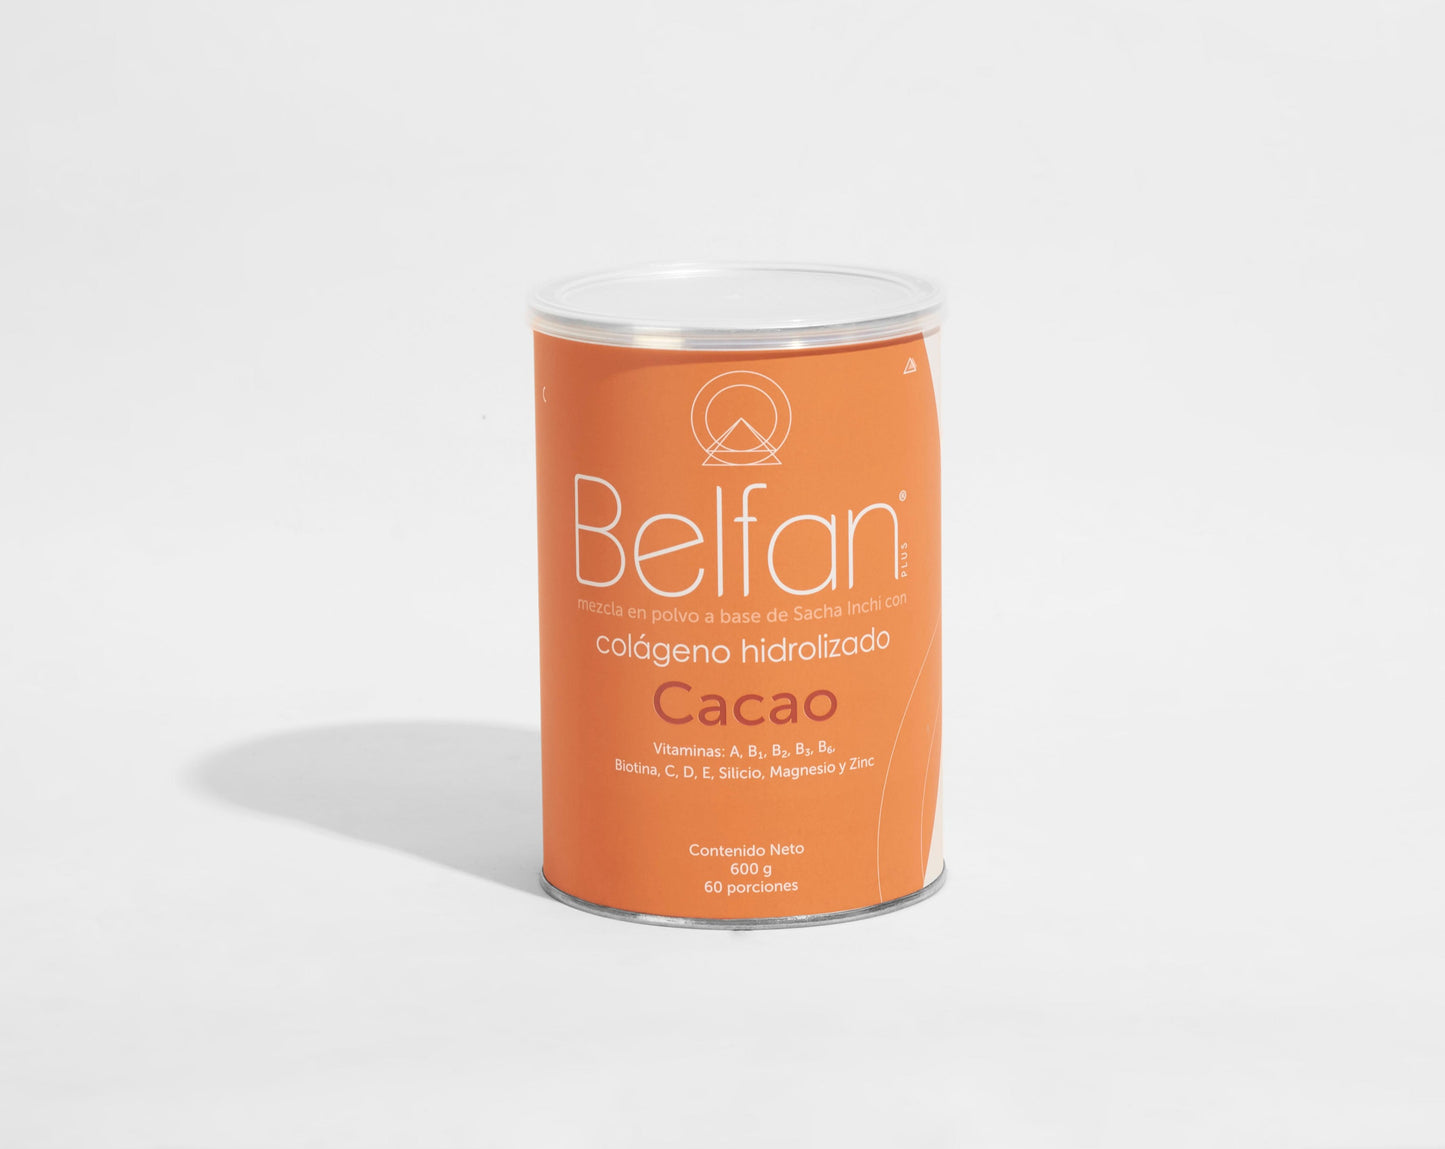 Colágeno Hidrolizado Belfan Cacao y Silicio x 600g